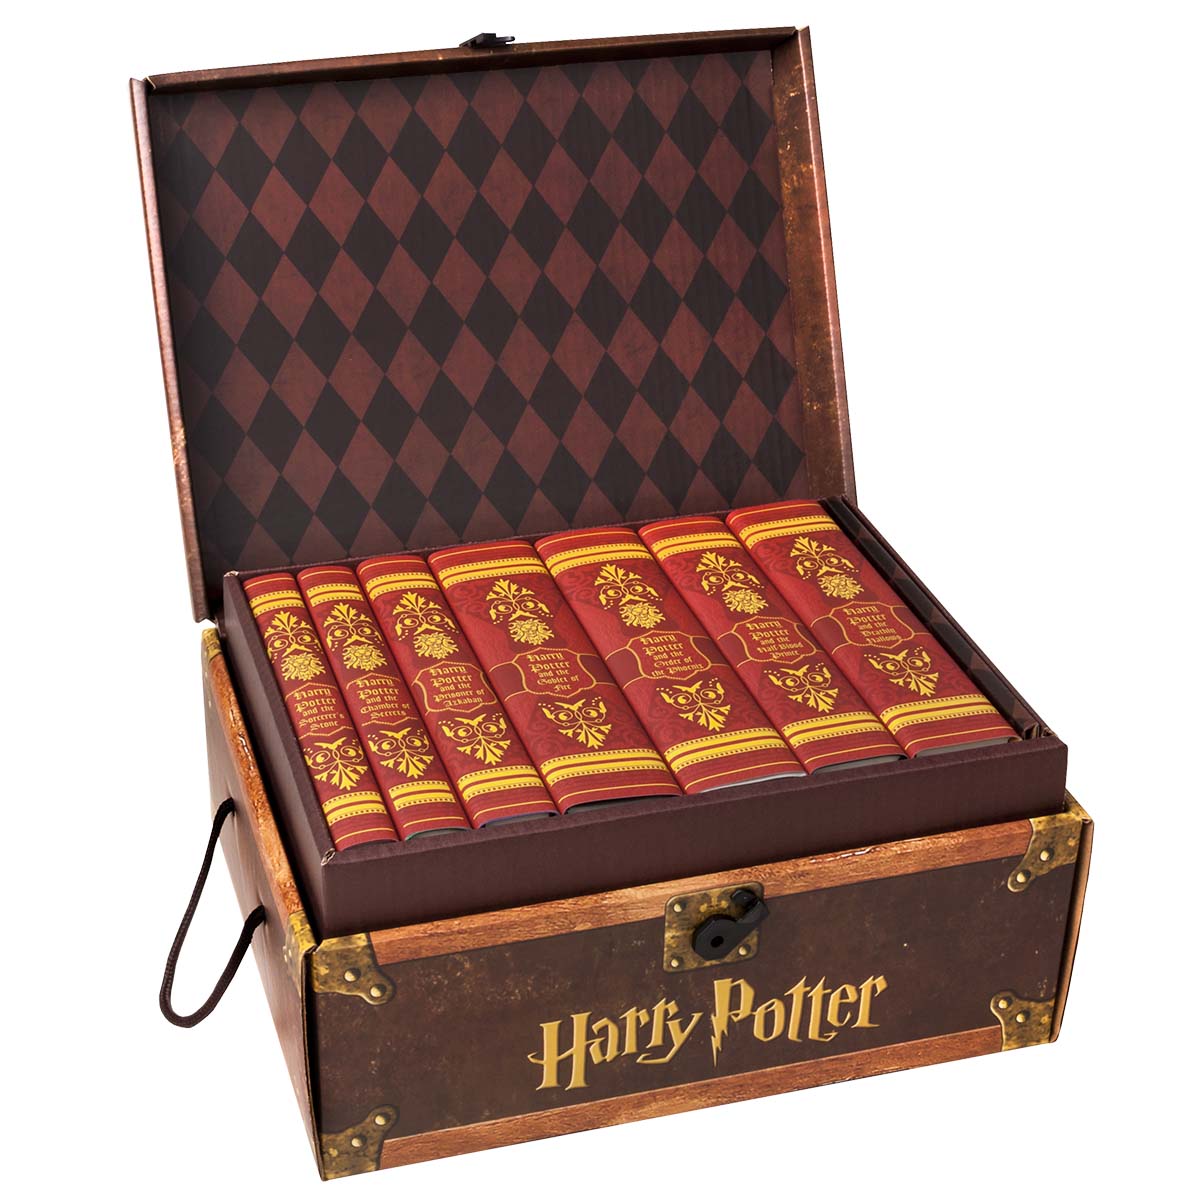 HPGR7-harry-potter-gryffindor-box-1200